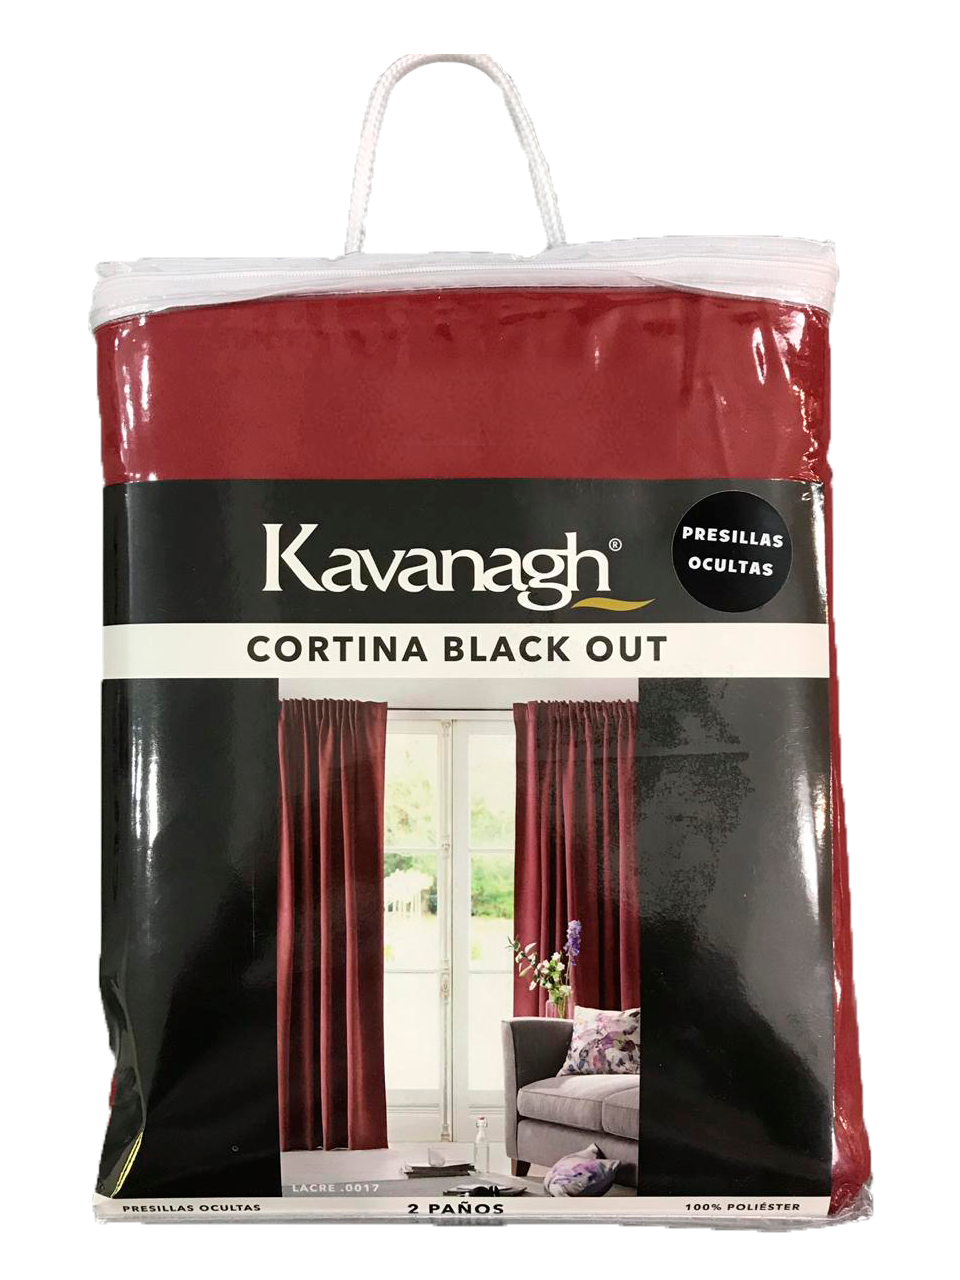 LAEWIN - cortinas opacas black out para salon salón para